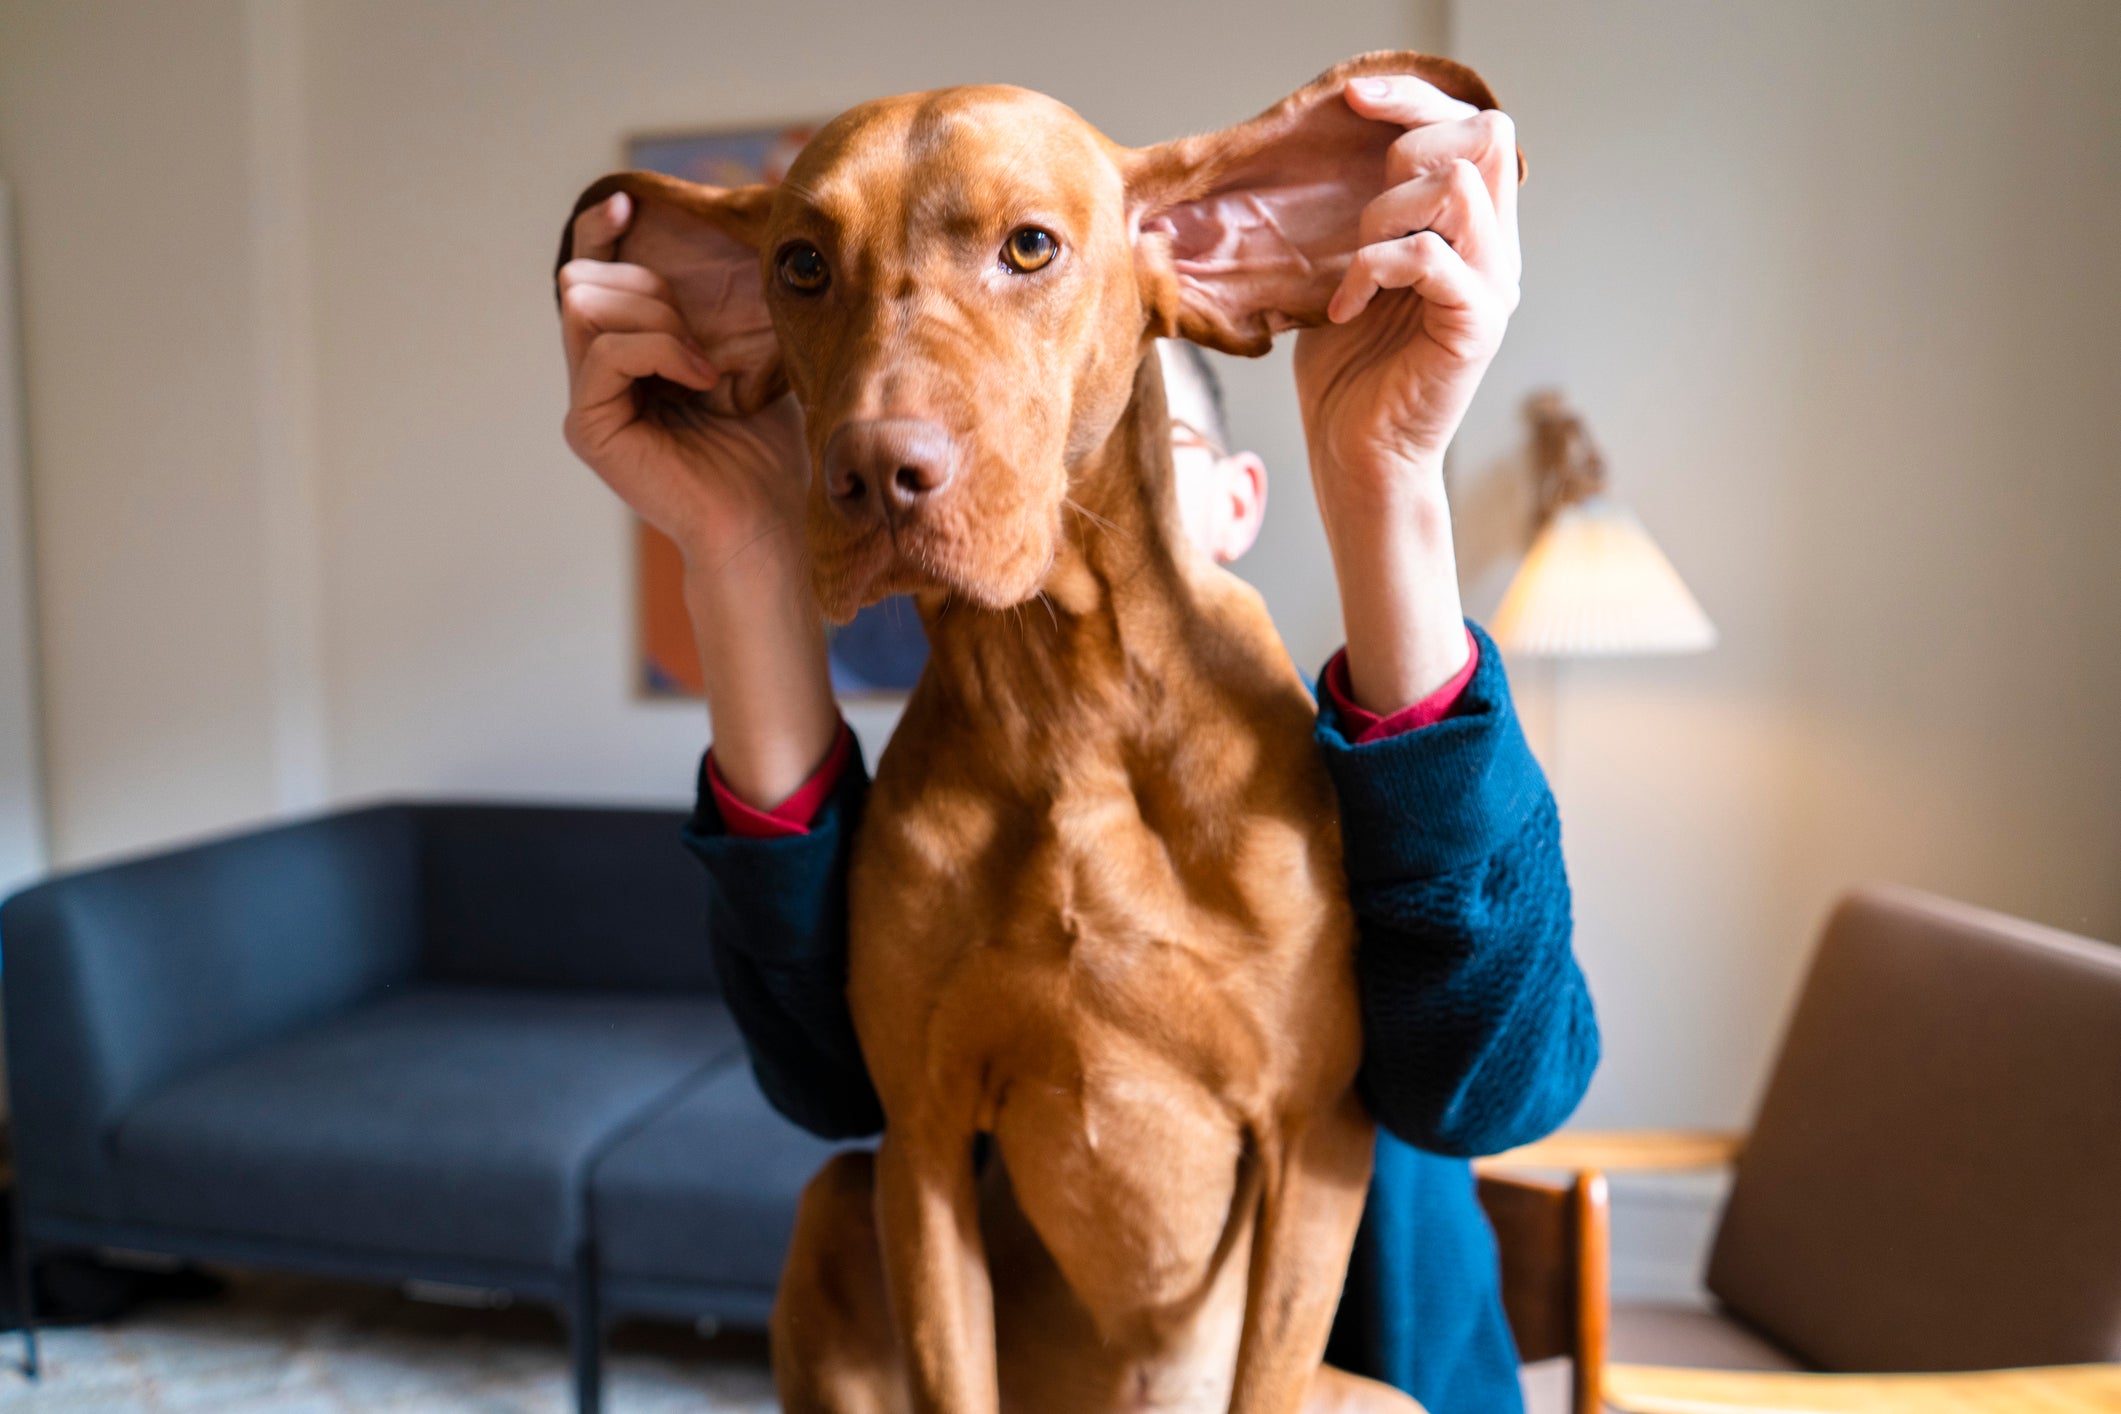 Humano levantando as grandes orelhas de cachorro em sala de estar